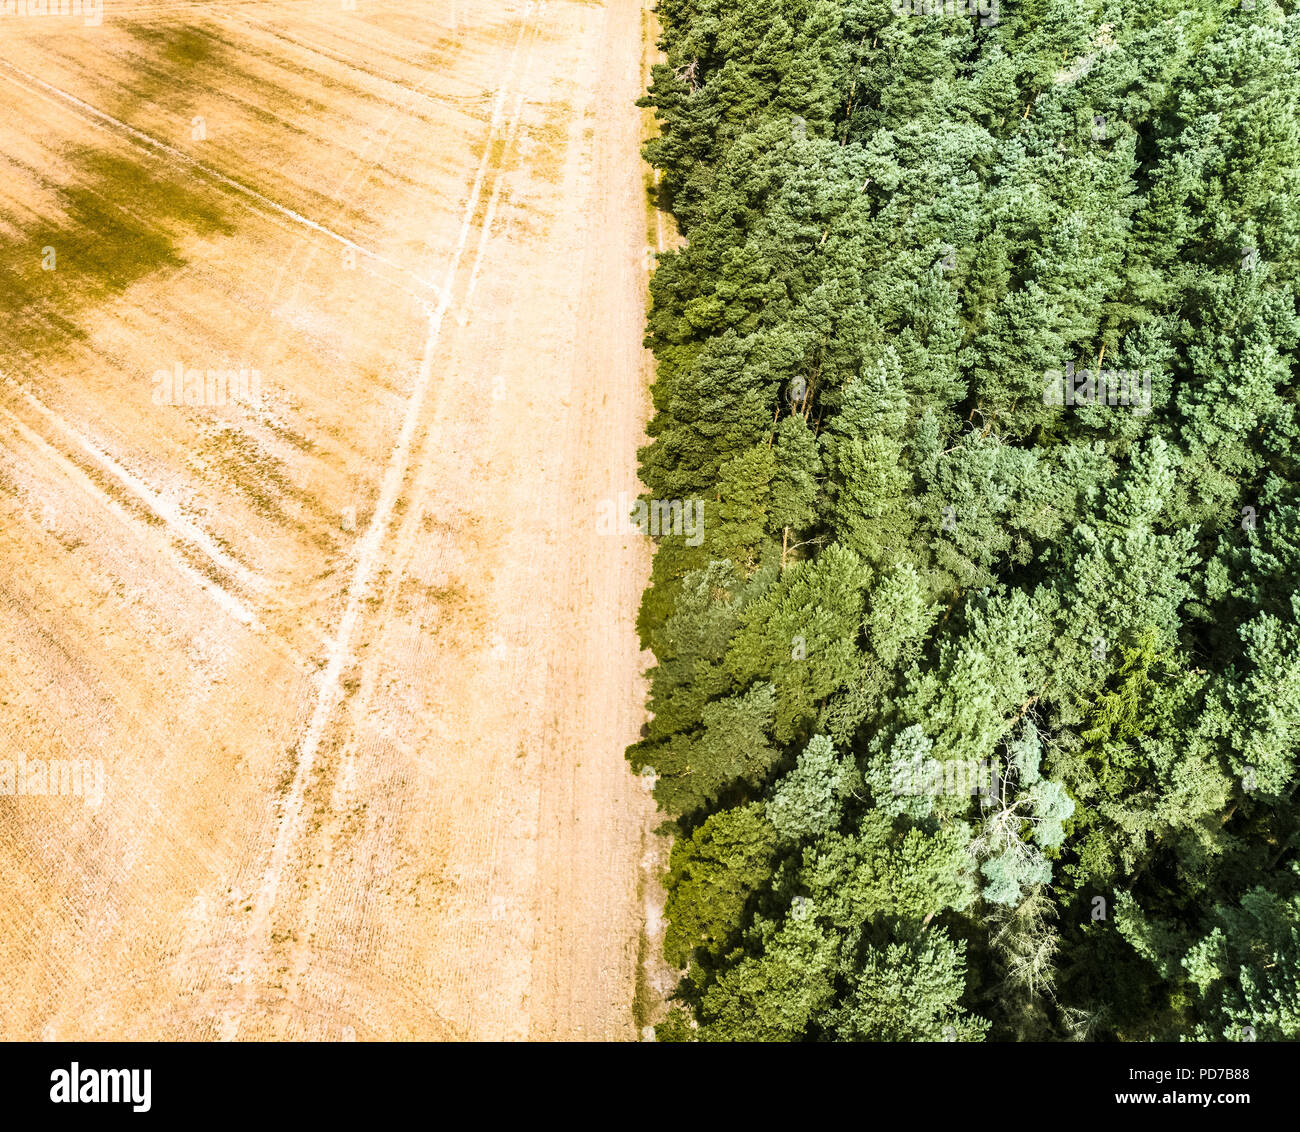 Image abstraite d'un champ de blé moissonné, divisé en une forêt frontière, au milieu. Banque D'Images